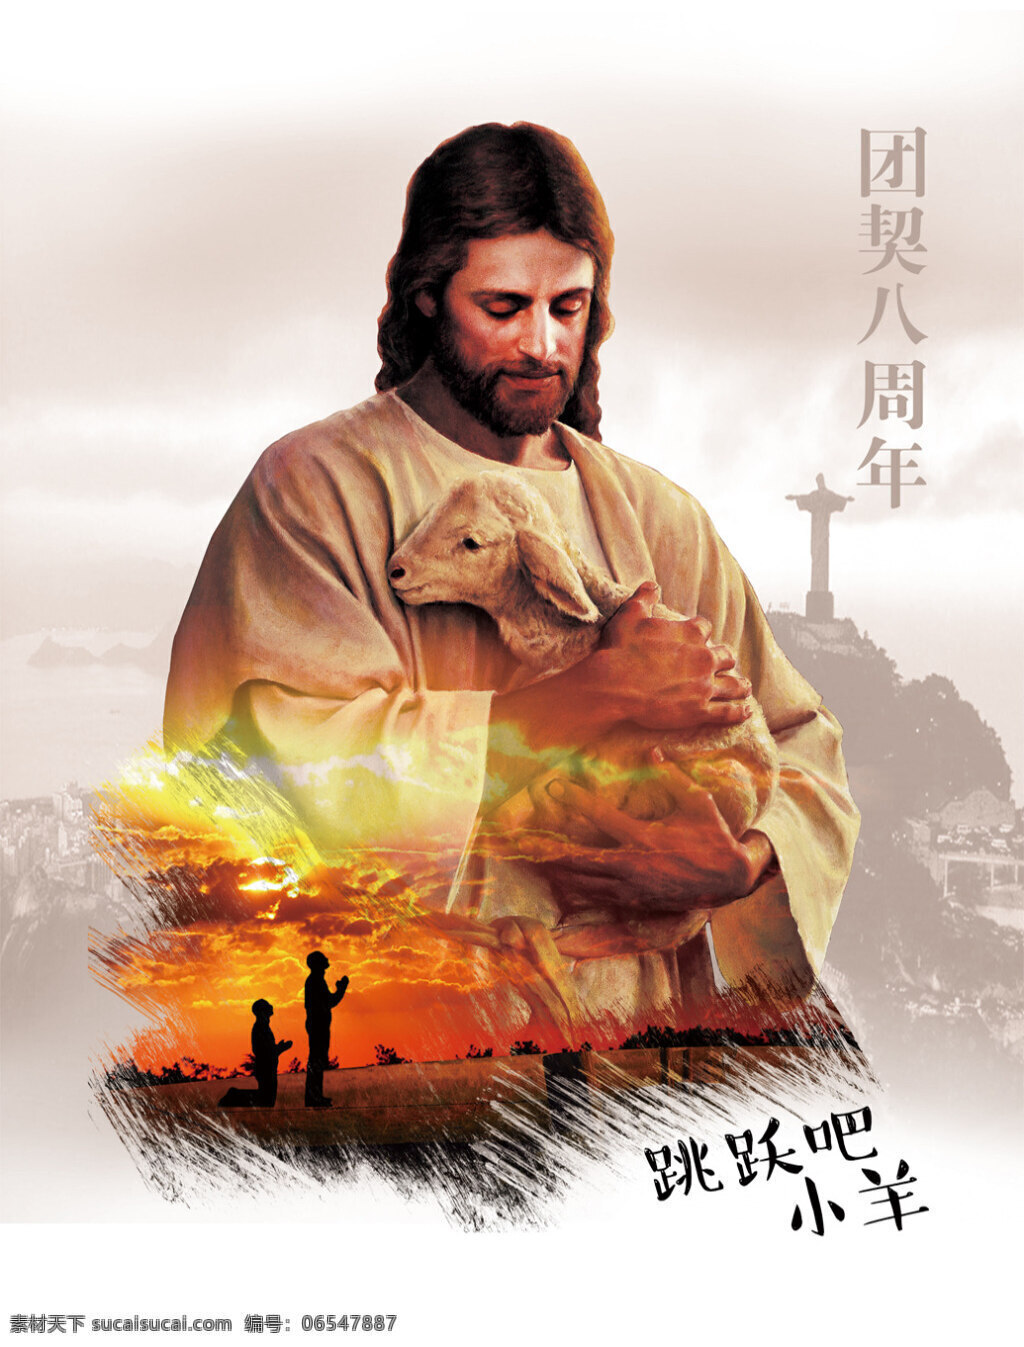 基督教 海报 团契 周年 耶稣海报 团契海报 祝福 教堂海报 周年海报 团契八周年 跳跃吧小羊